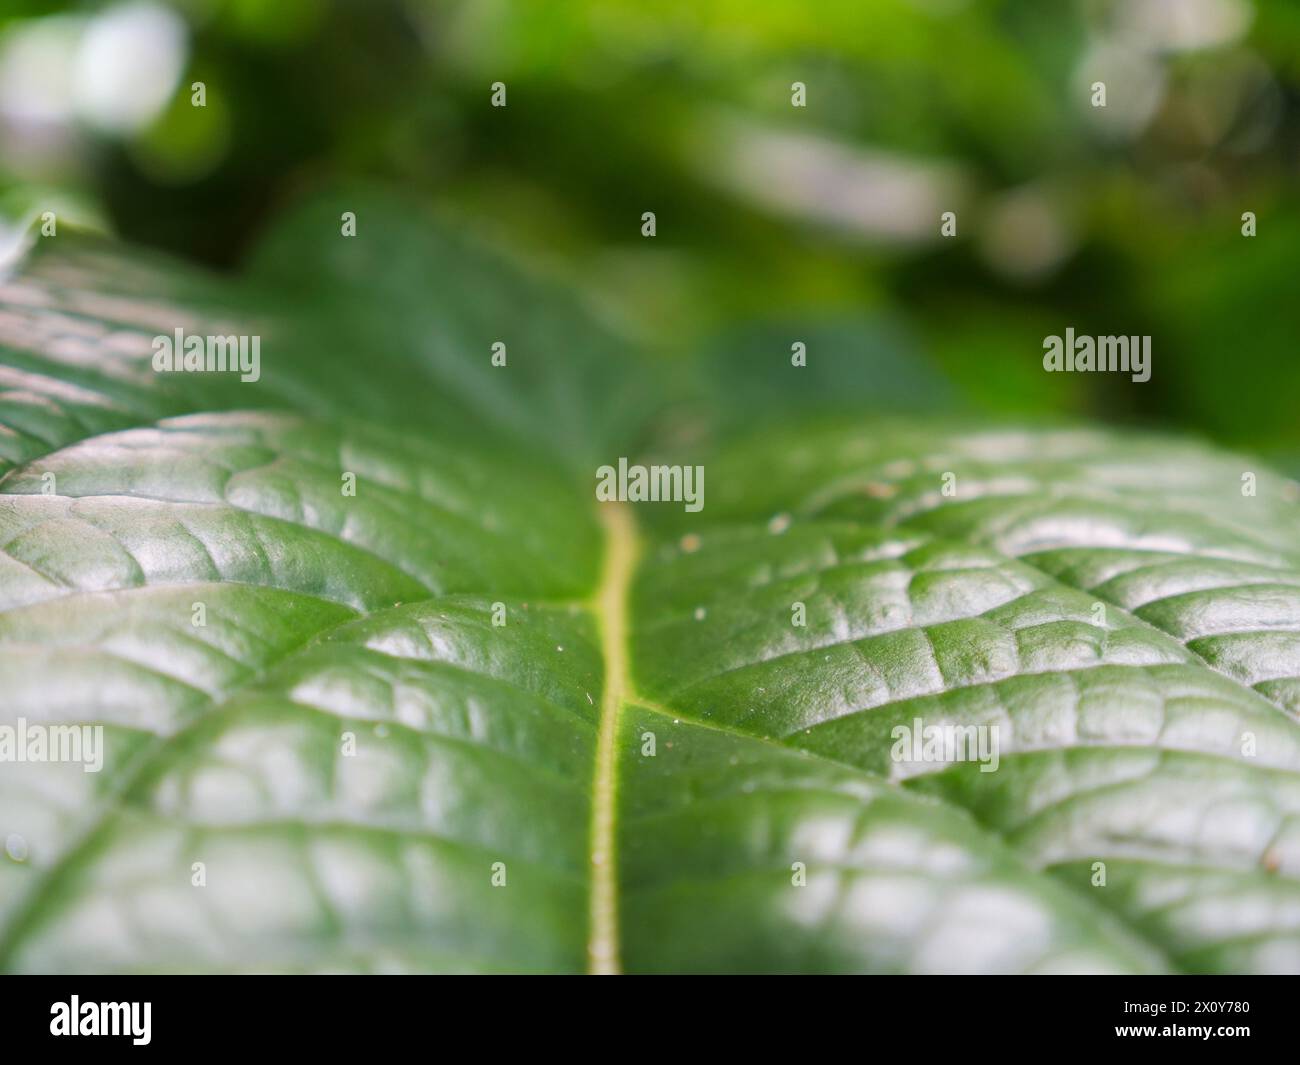 Eine wunderschöne Nahaufnahme eines exotischen grünen Blattes mitten im Dschungel. Hintergrundbild für ein naturbezogenes Werk Stockfoto